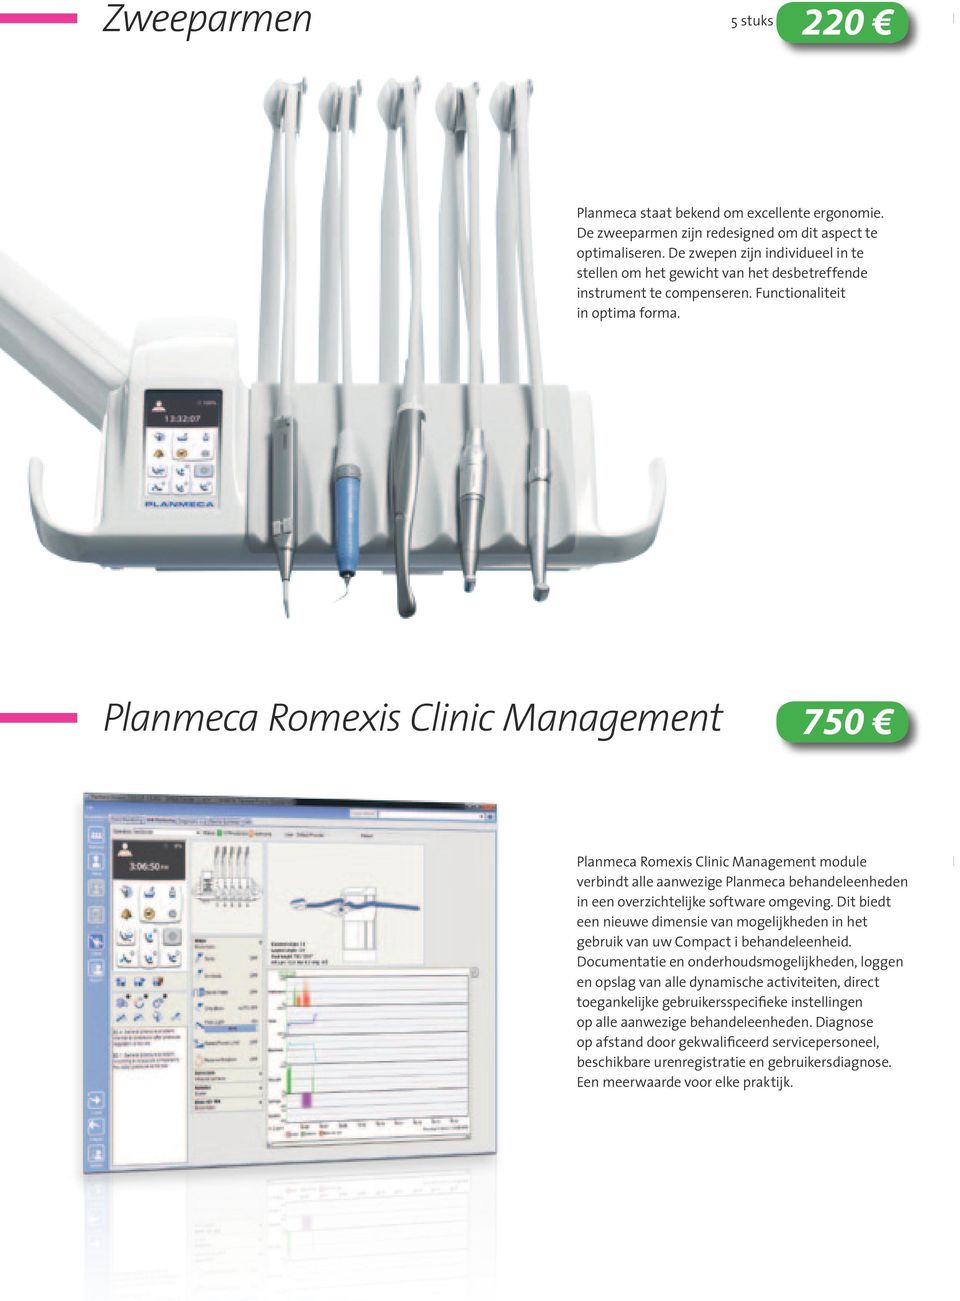 Planmeca Romexis Clinic Management 750 Planmeca Romexis Clinic Management module verbindt alle aanwezige Planmeca behandeleenheden in een overzichtelijke software omgeving.